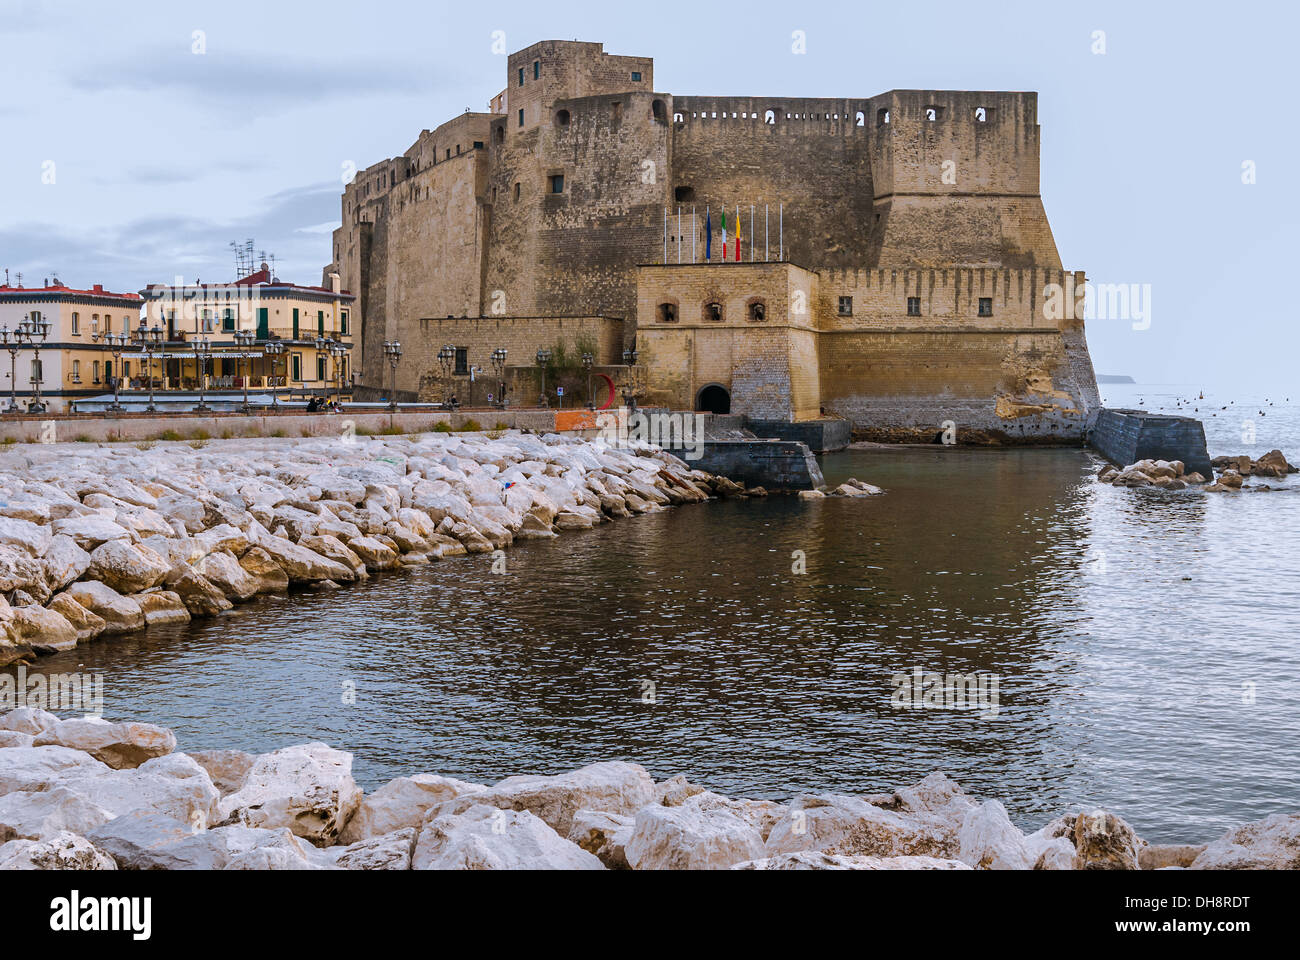 Castel dell'Ovo uovo (Castello) una fortezza medievale nella baia di Napoli, Italia. Foto Stock